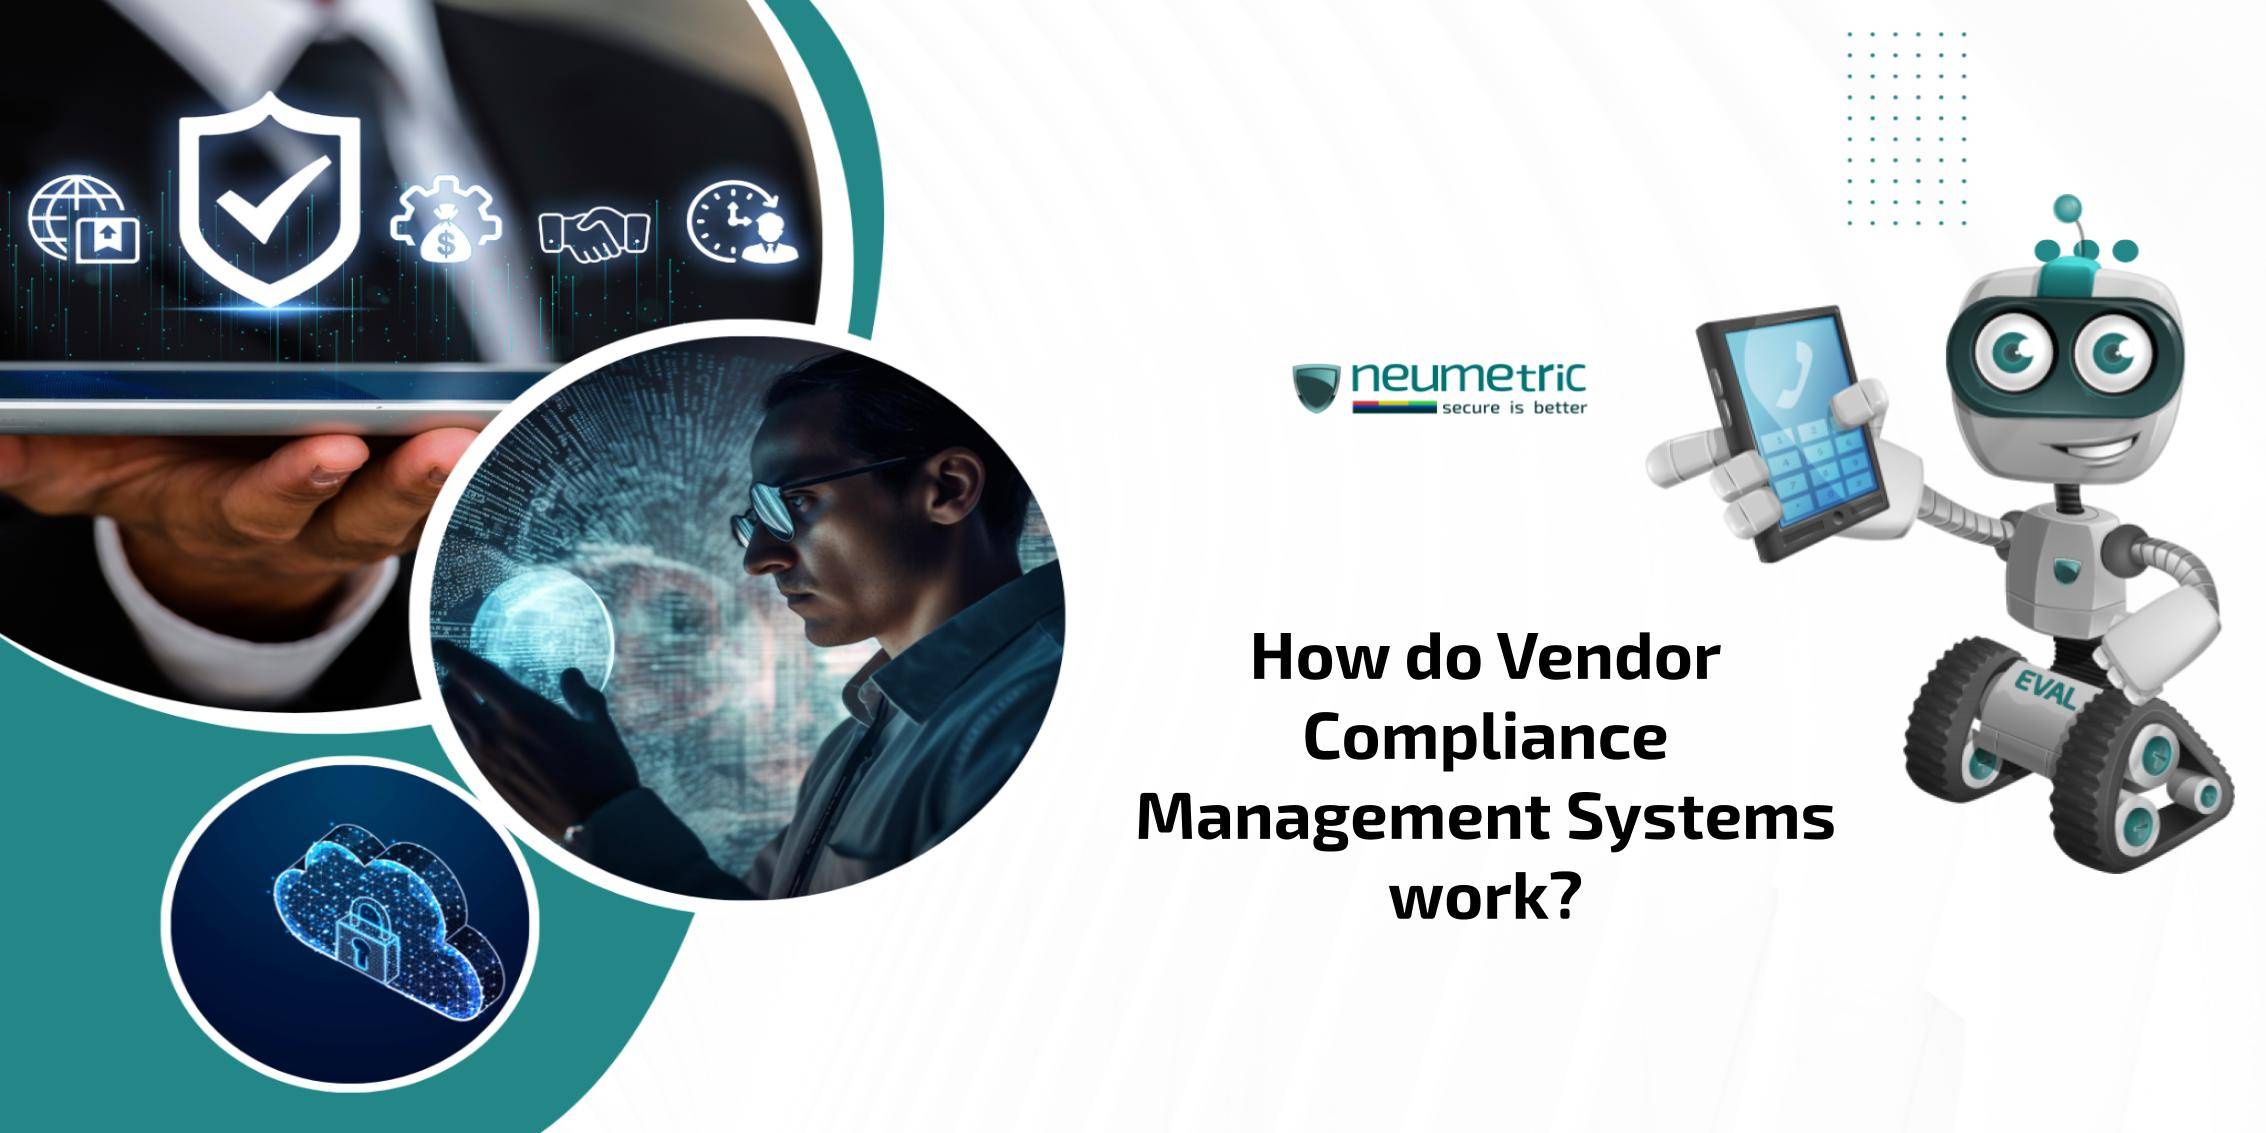 Vendor compliance management systems